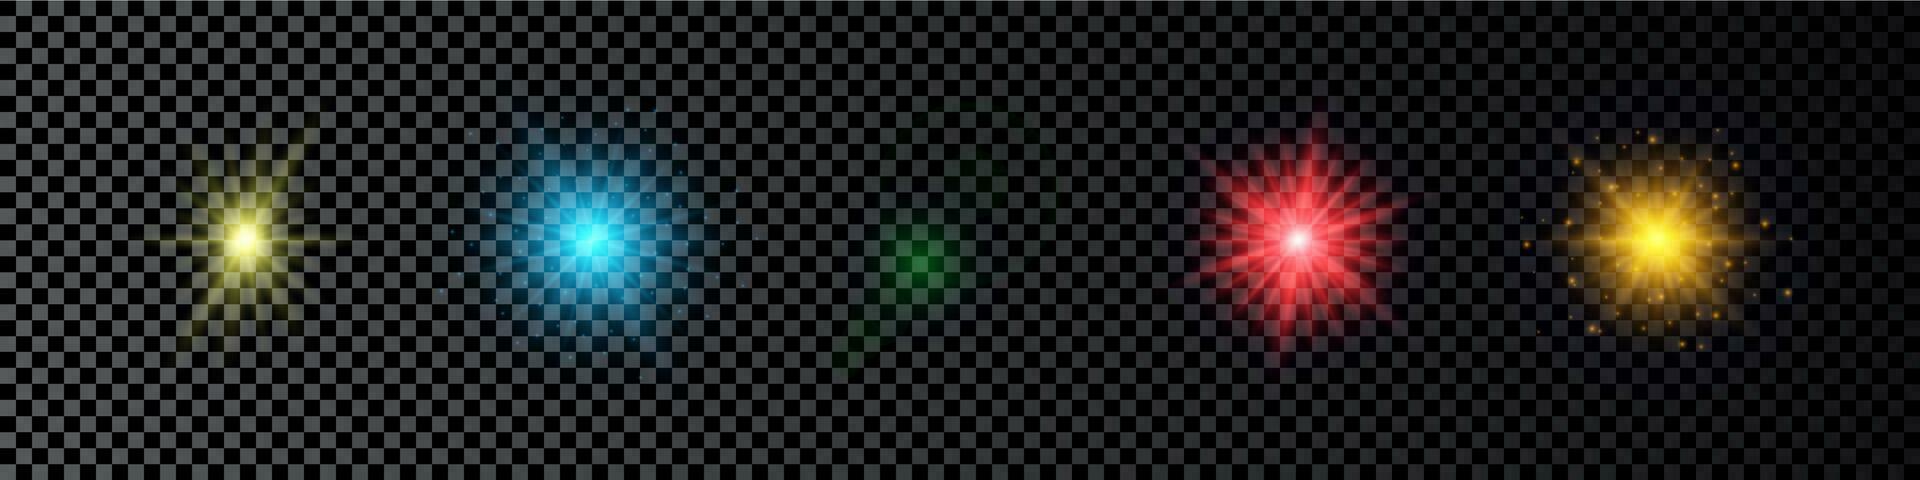 leggero effetto di lente razzi. impostato di cinque multicolore raggiante luci starburst effetti con scintille su un' buio sfondo. vettore illustrazione